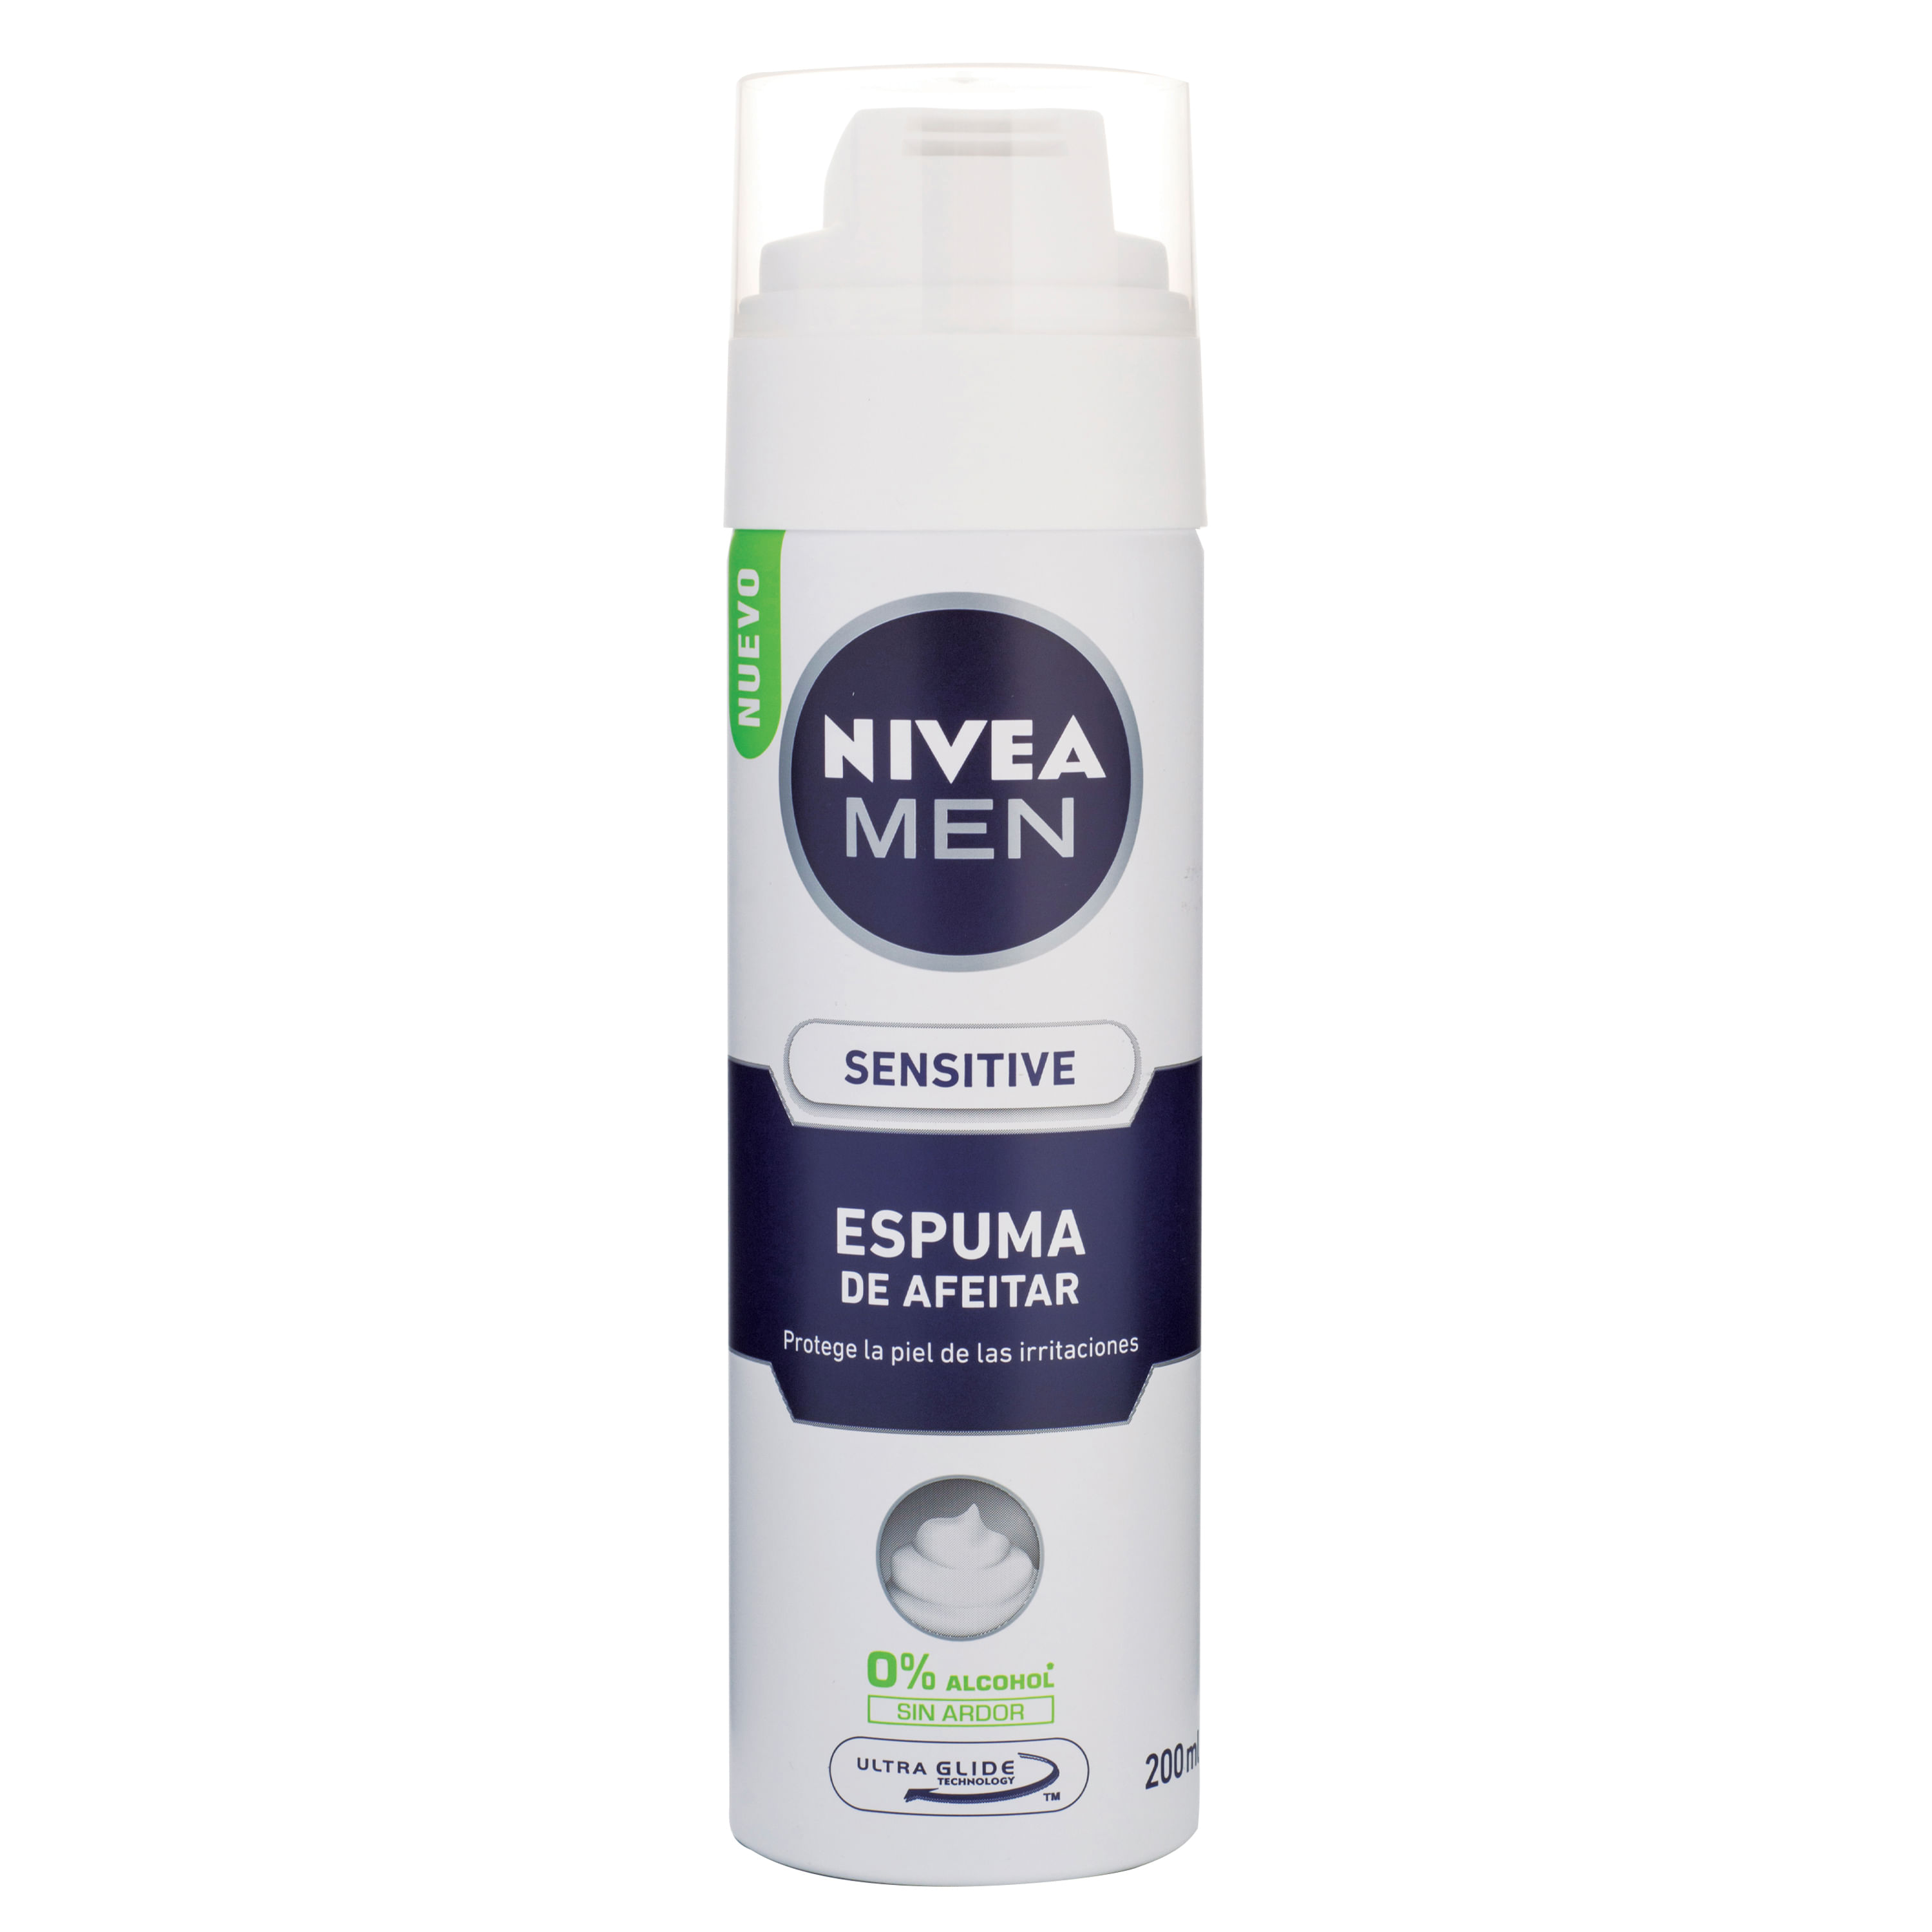 Nivea Men Sensitive Espuma de Afeitar - Frasco de 200 ml